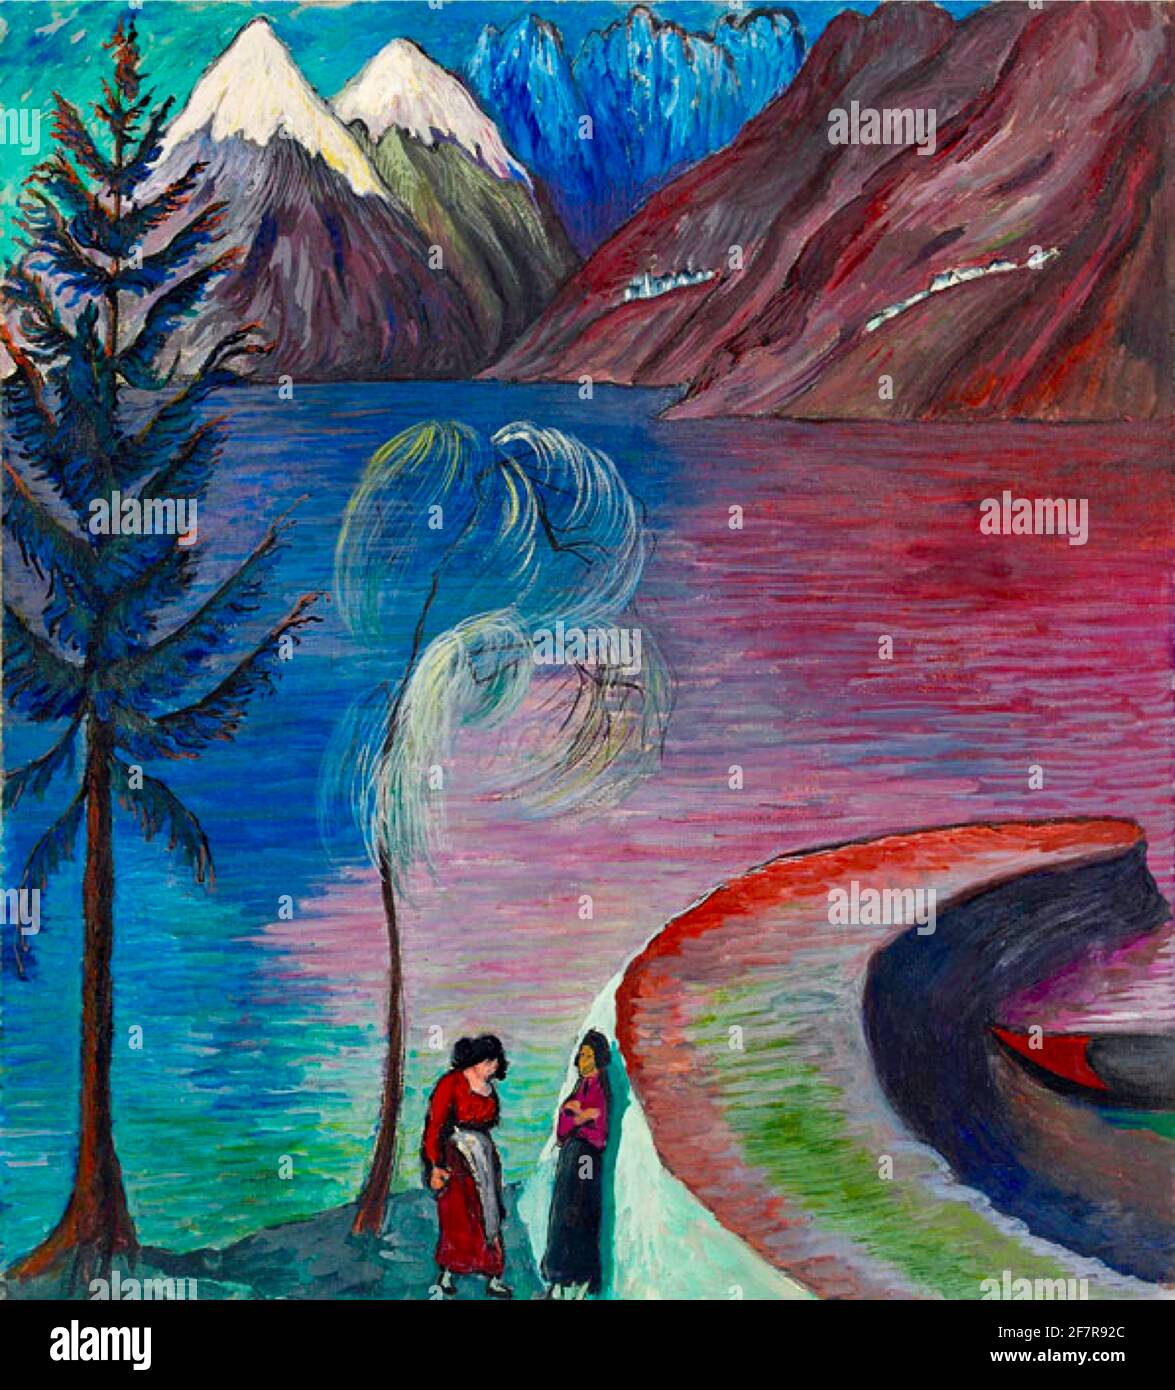 Marianne von Werefkin opera intitolata a Dawn. Due donne conversano dal molo. Paesaggio dai colori vivaci con montagne innevate in lontananza. Foto Stock